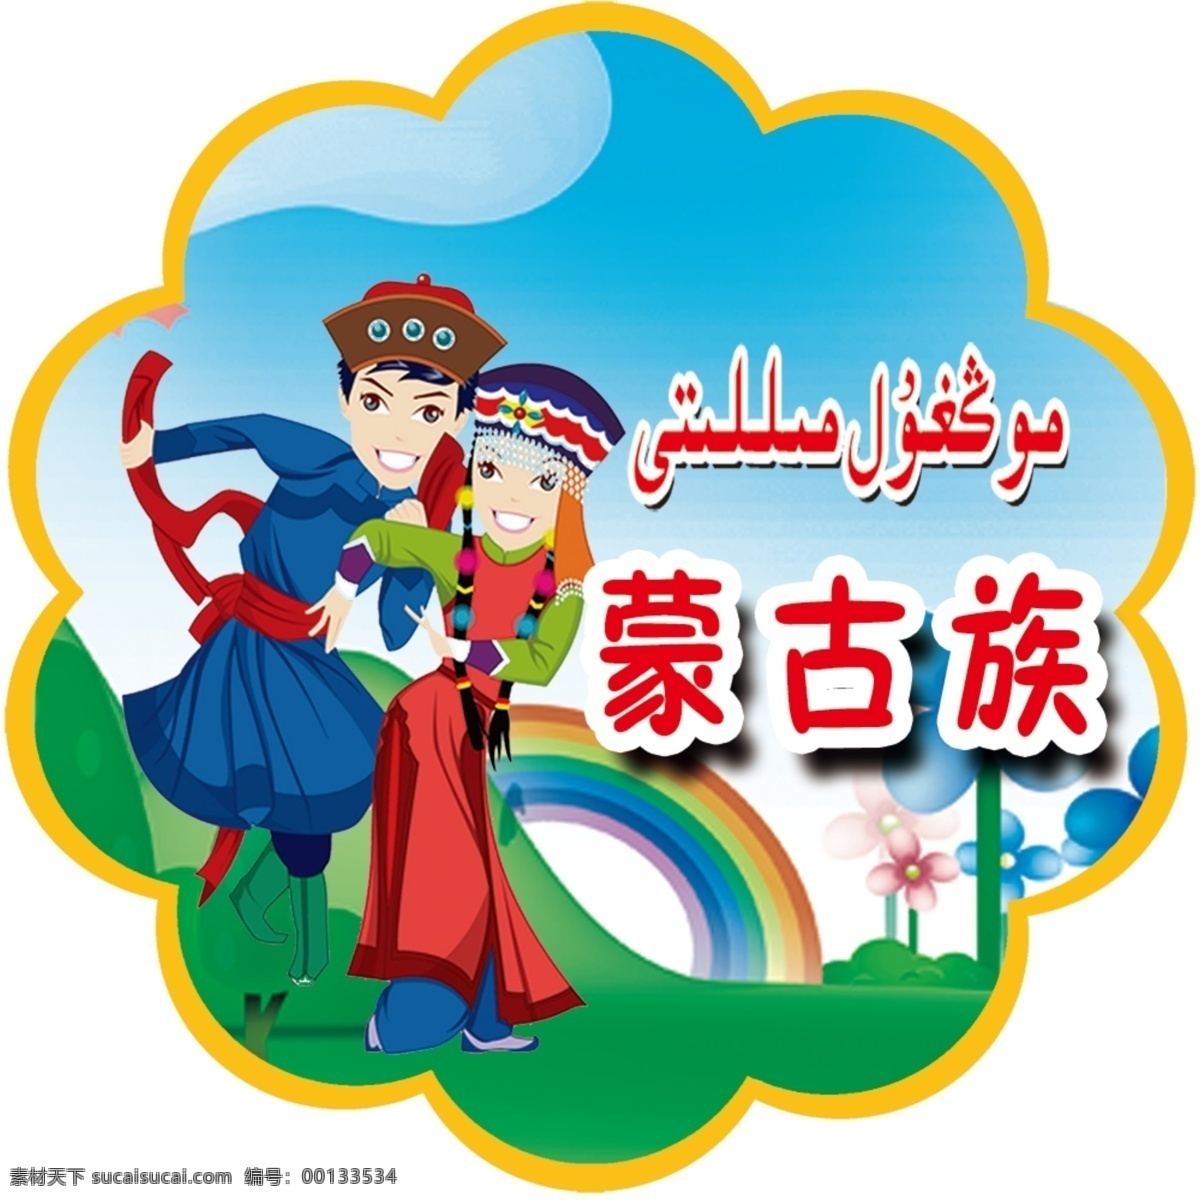 幼儿园 民族 异性牌 蒙古族 学校 卡通设计